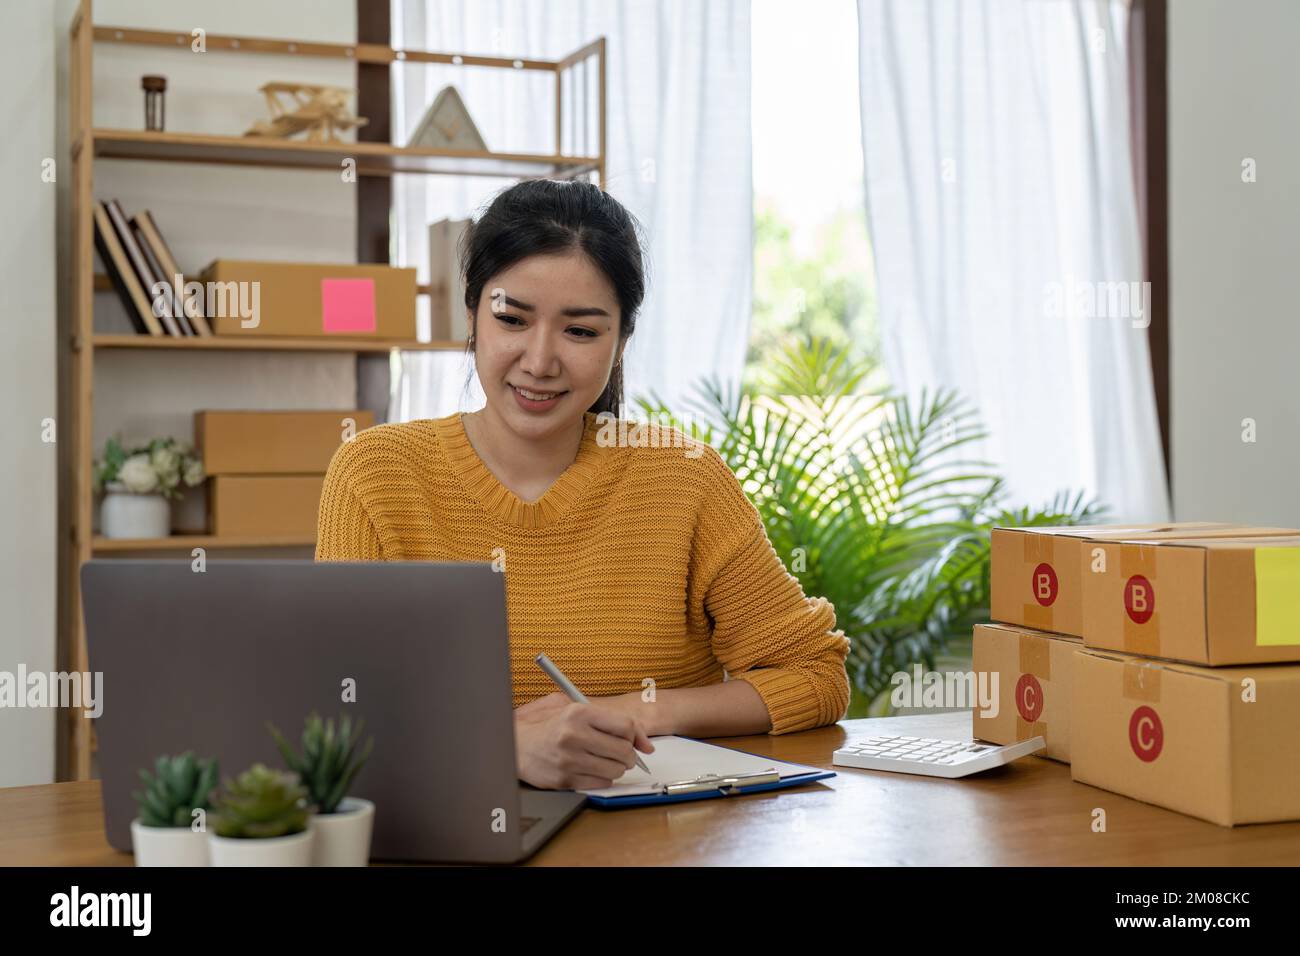 Start-up-Unternehmen Kleinunternehmer online KMU oder freiberufliche Frau, die zu Hause arbeitet Concept, junger asiatischer Kleinunternehmer im Home Office, online Stockfoto